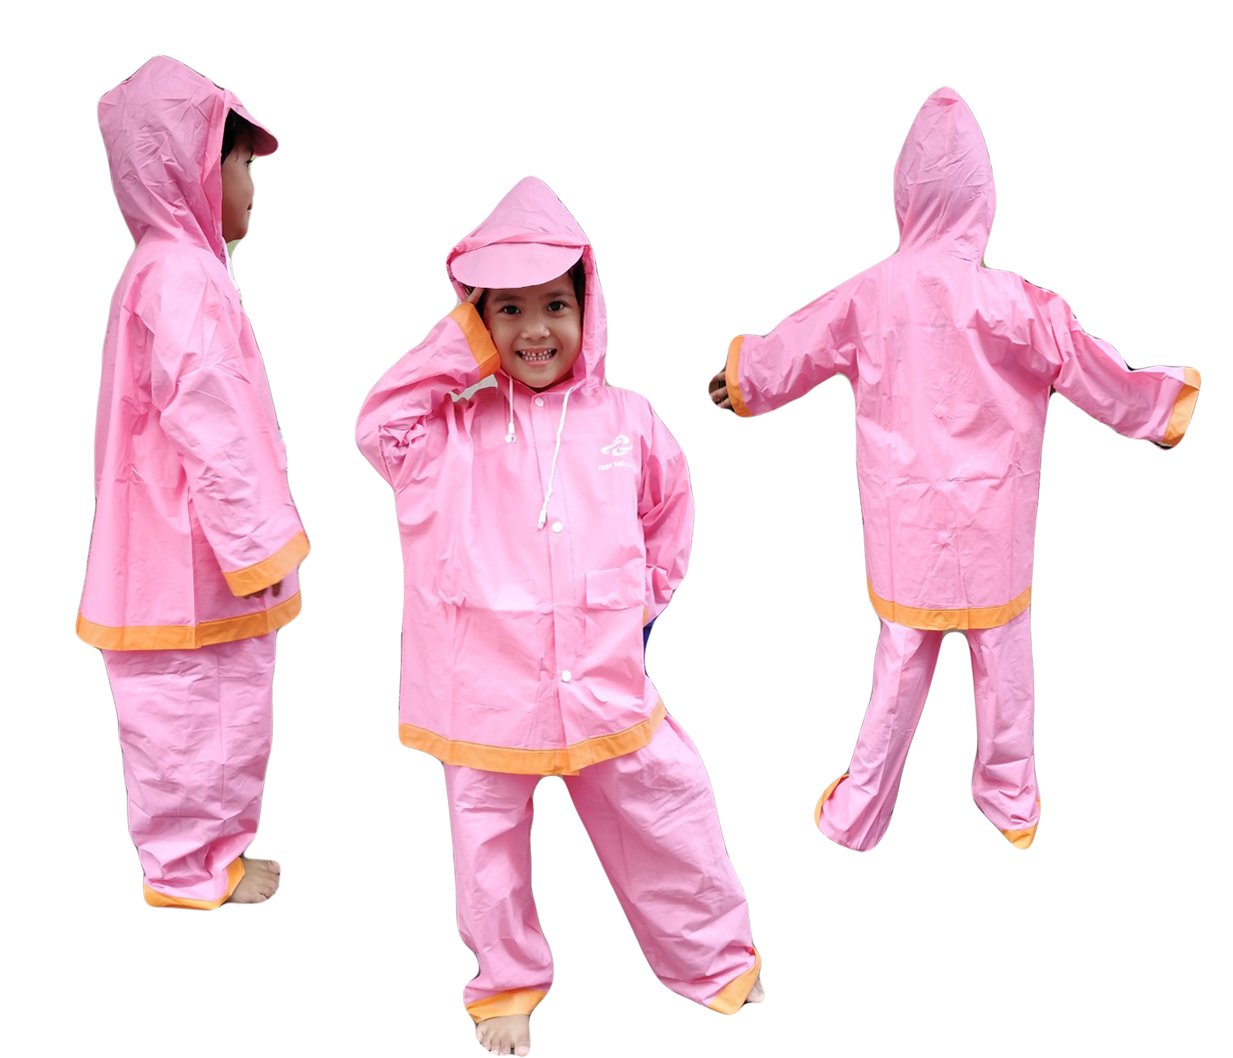 เสื้อกันฝนสำหรับเด็ก AS0066 Size 3 ผ้าหนา แยกส่วน เสื้อ และกางเกง พร้อมซองใส่ ใส่ได้ทั้งเด็กผู้ชายและเด็กผู้หญิง มีหลายสีให้เลือก